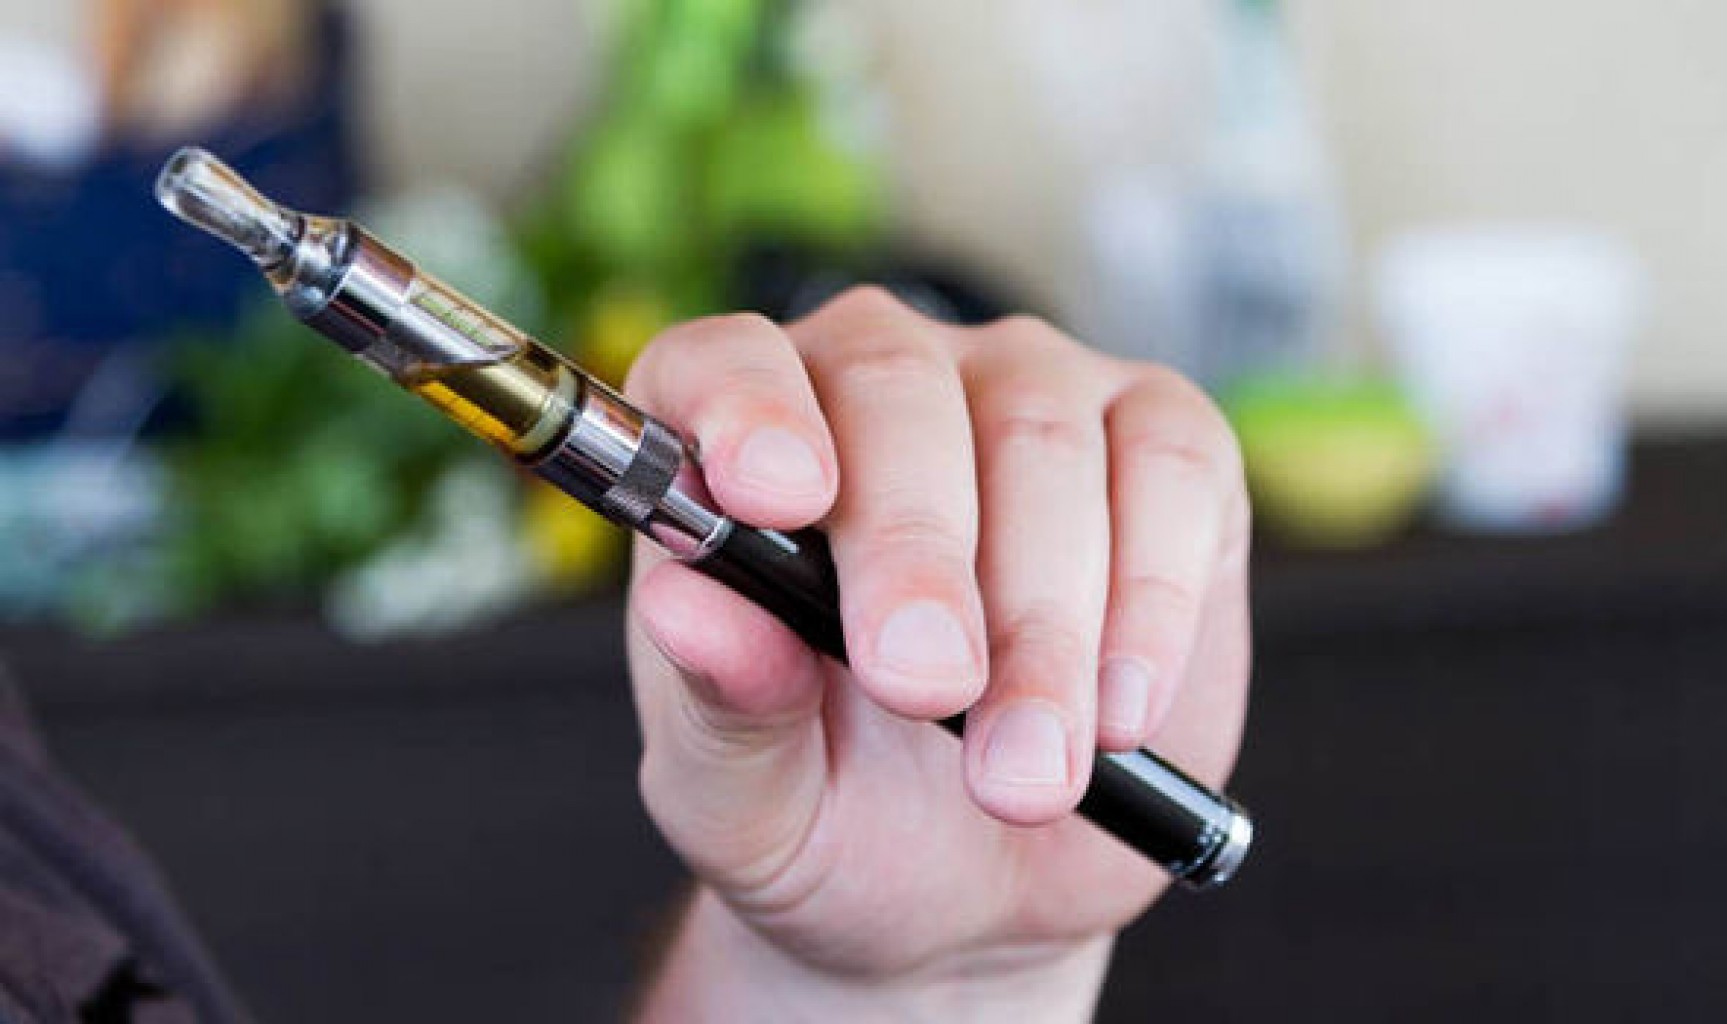 Vancuren Asegura el paso de la ley para prohibir el uso de “E-cigarette” en propiedad escolar